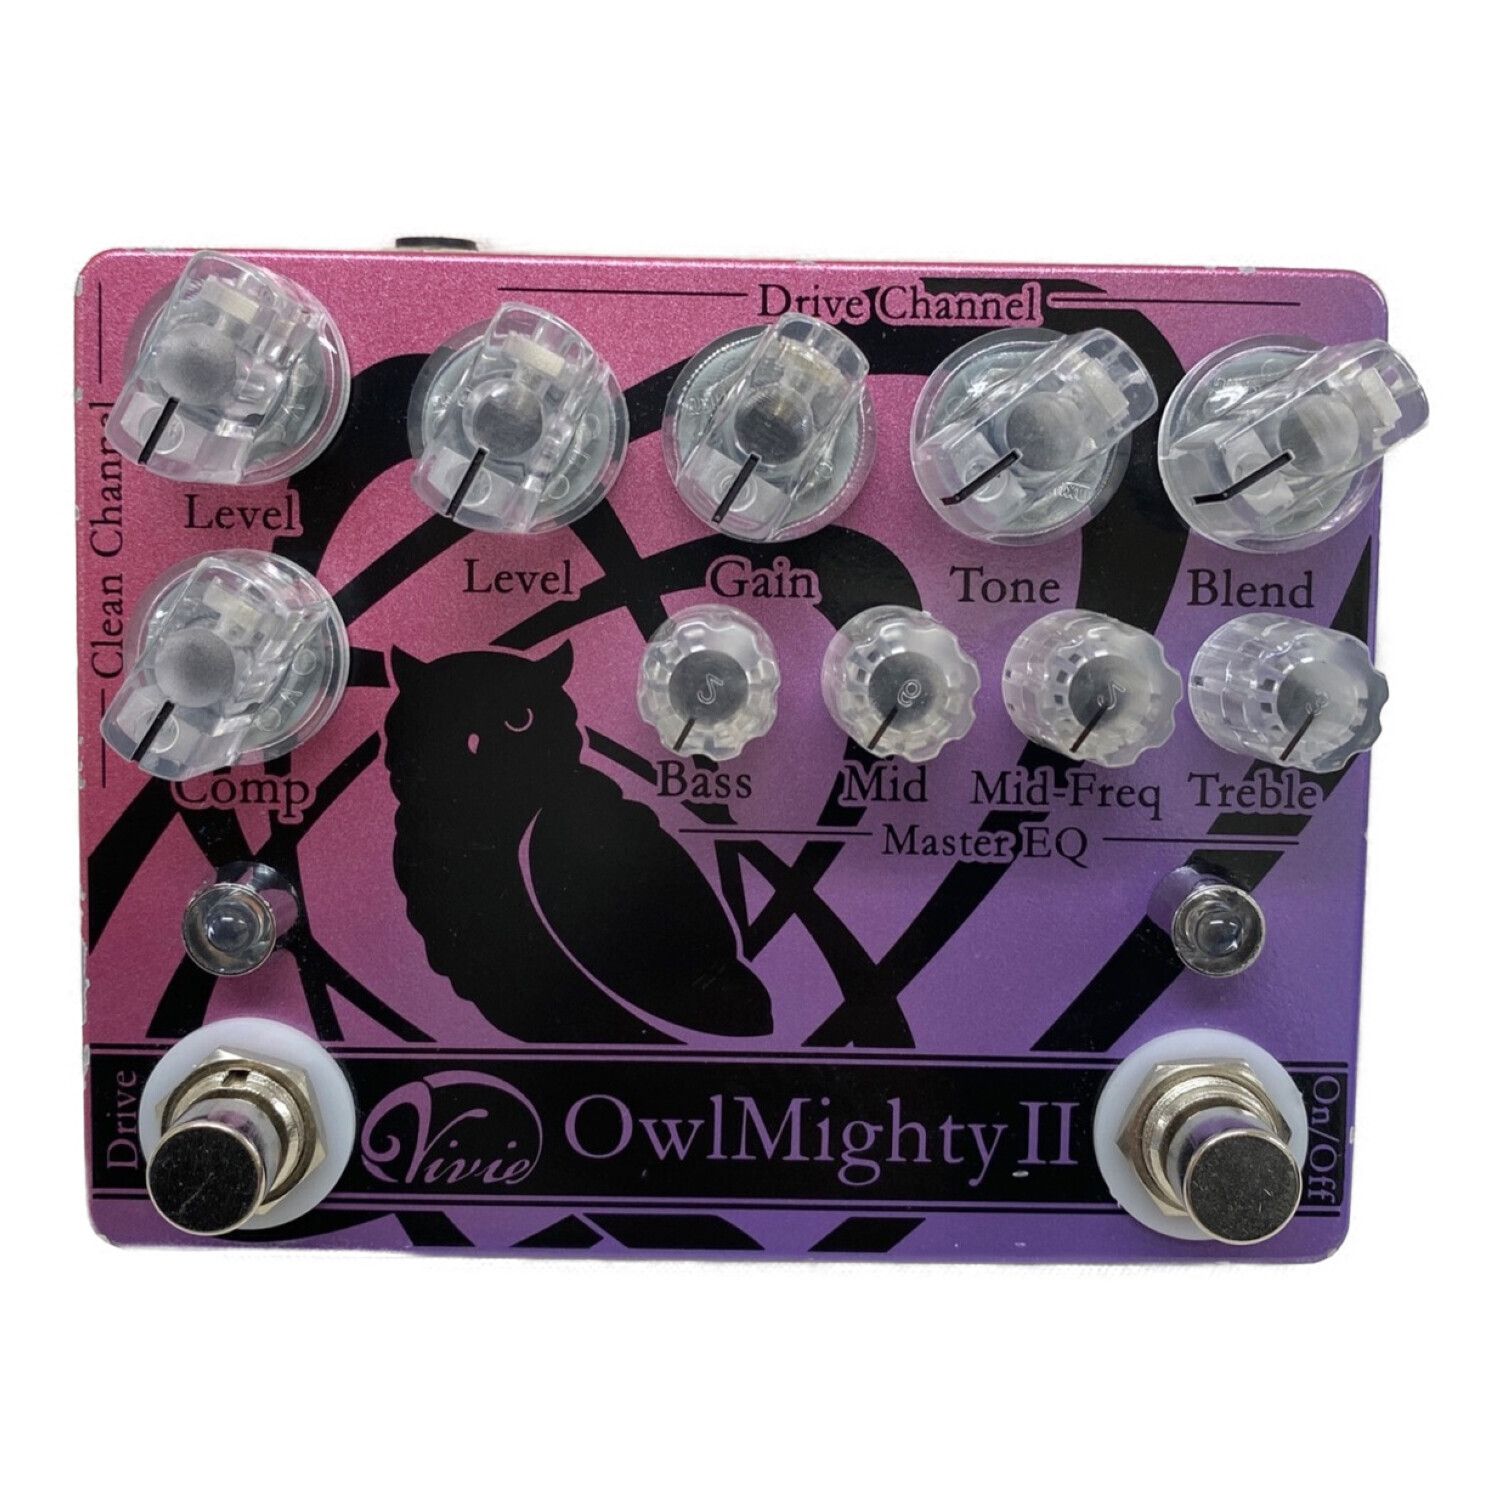 vivie (ヴィヴィ) ベース用プリアンプ OMII-00807 OwlMighty II 